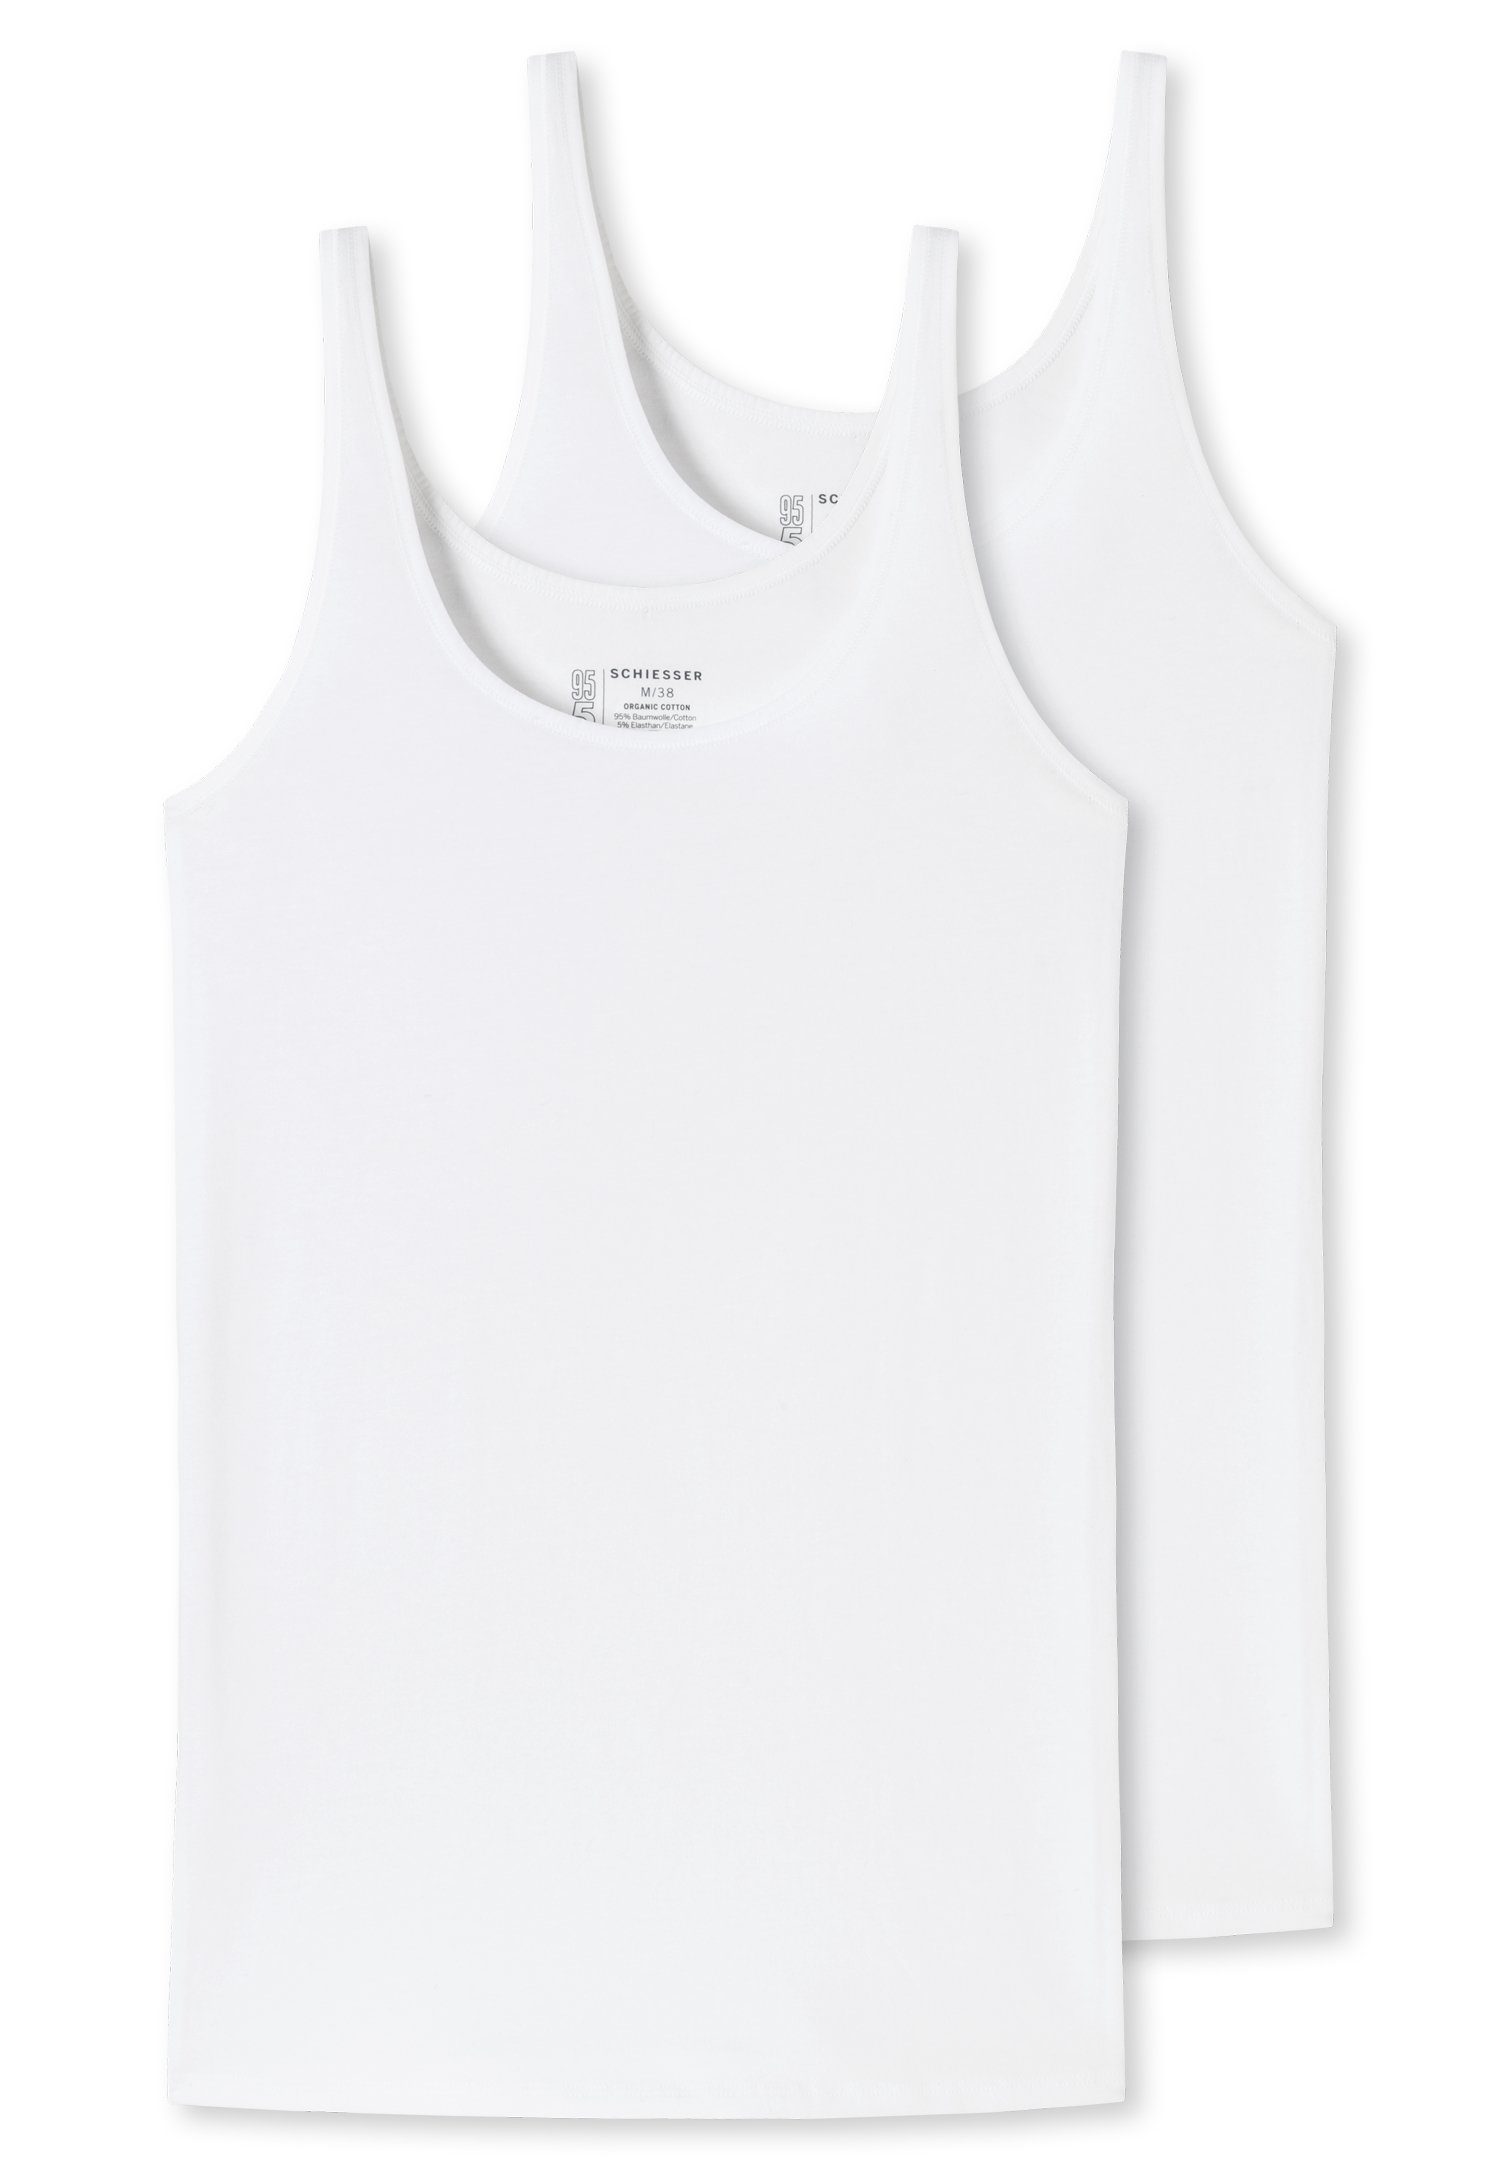 Schiesser Unterhemd (2er-Pack) mit Single-Jersey-Qualität 2xweiß elastischer